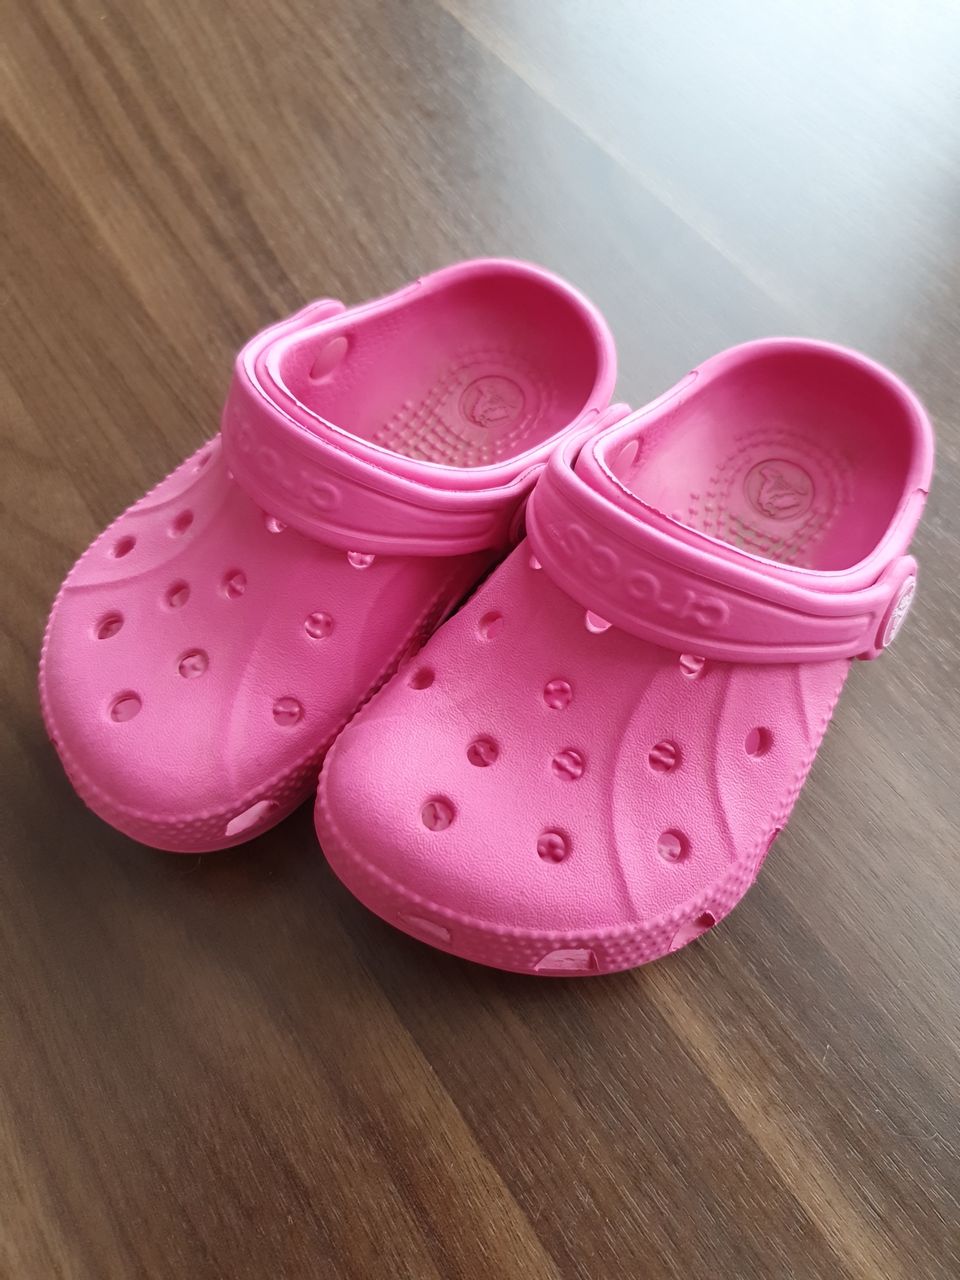 Lasten Crocs kengät koossa 23-24